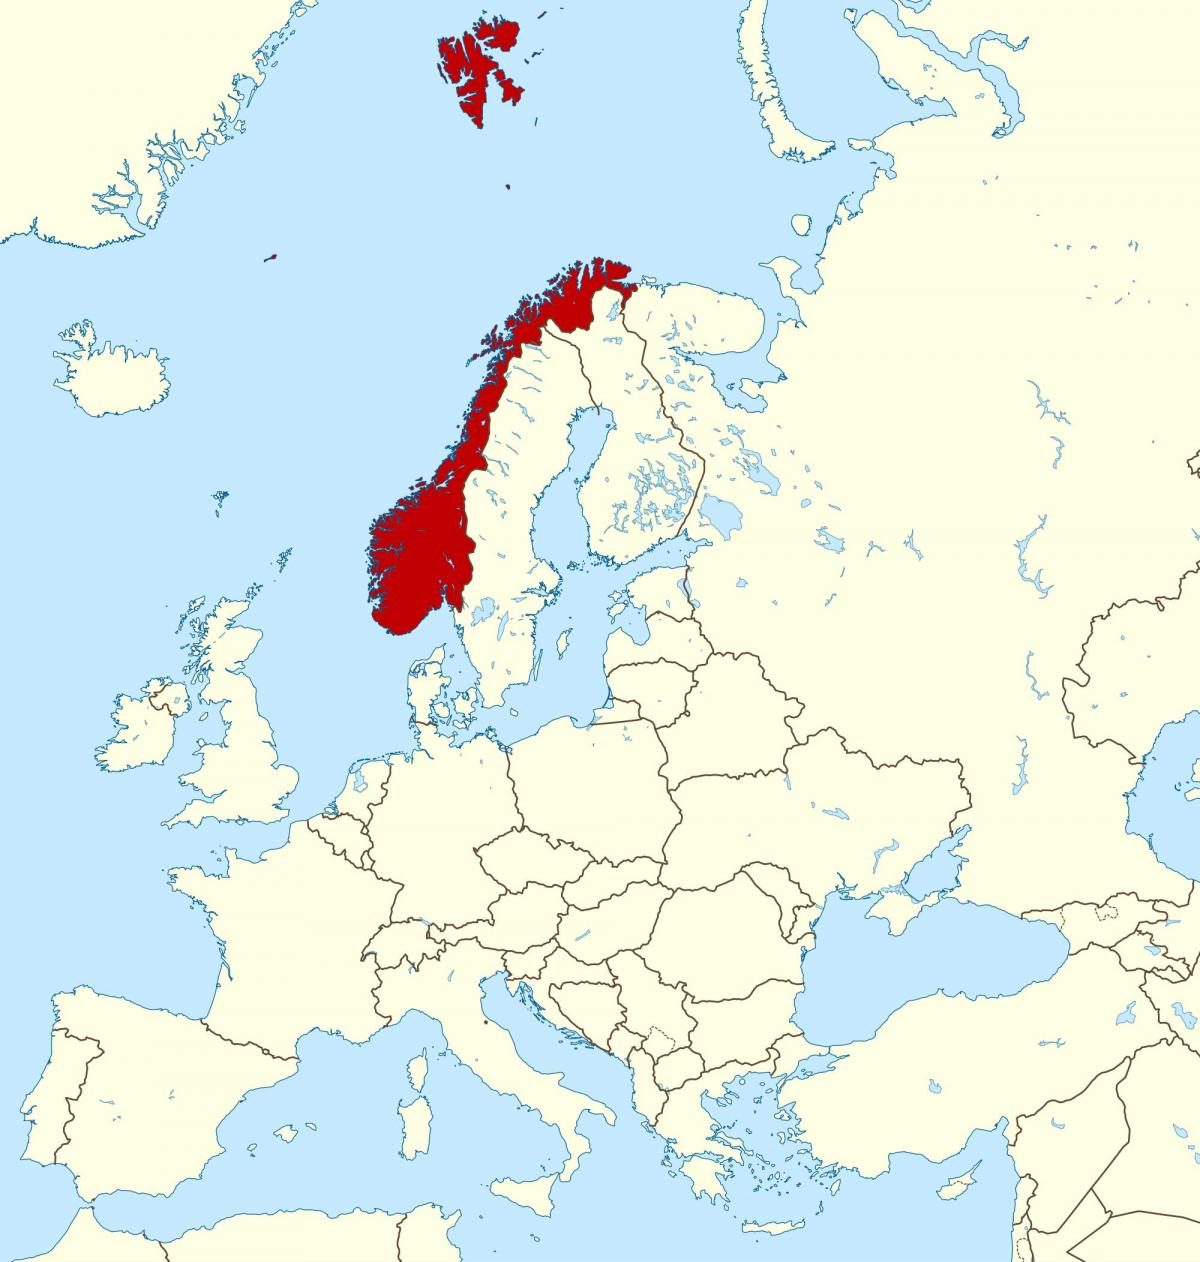 kort over Norge og europa